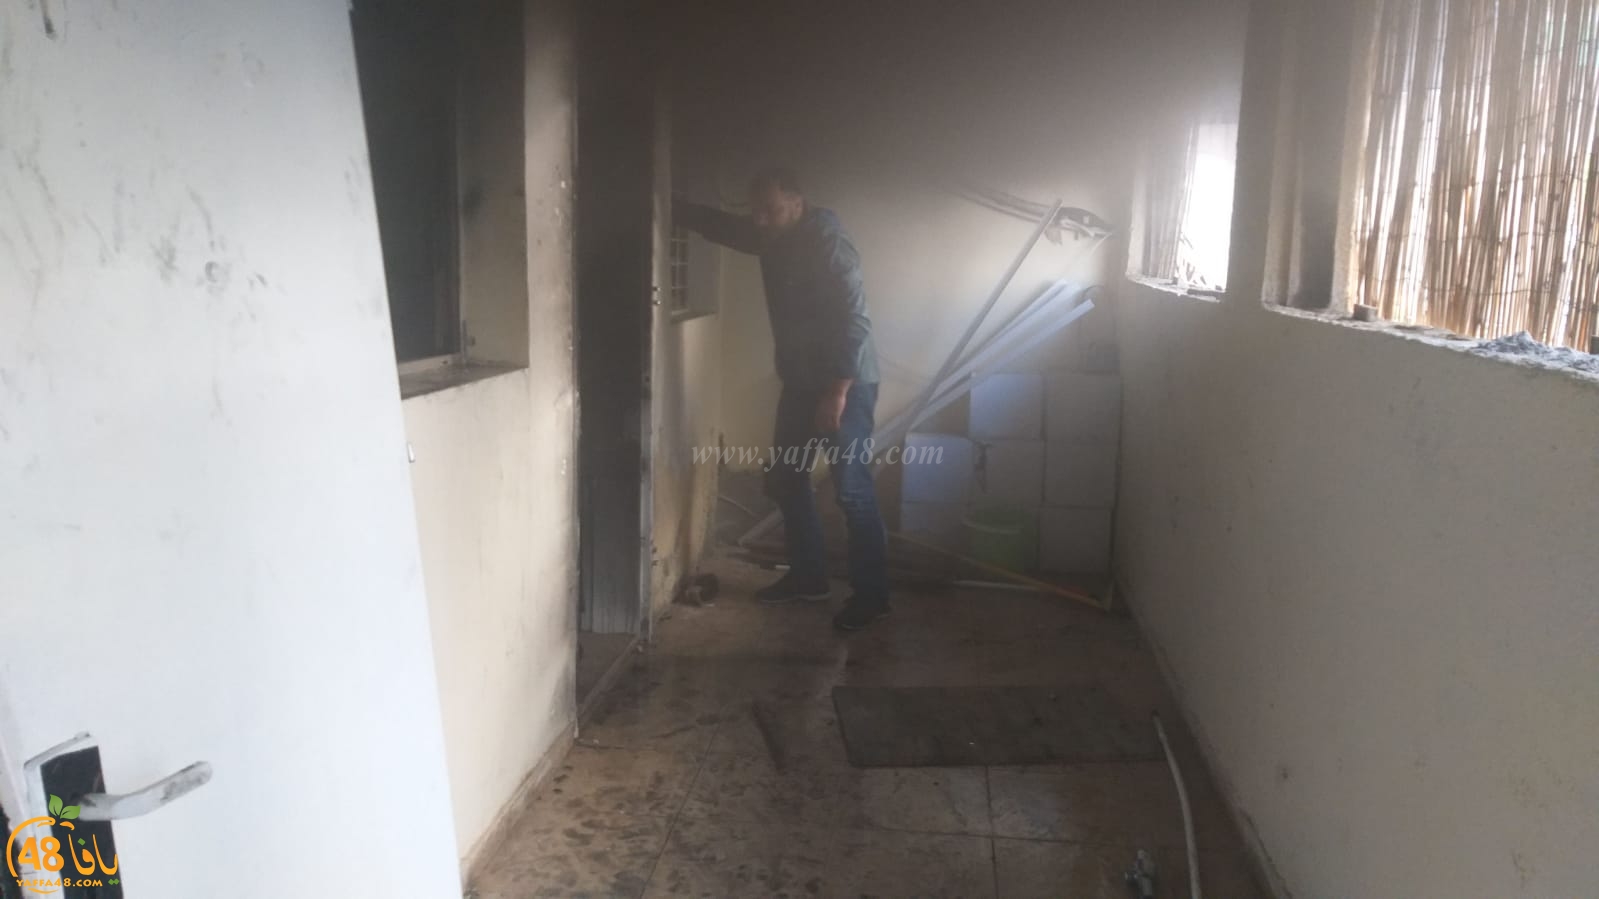 بالفيديو: حريق بأحد البيوت في حي العجمي بيافا وطواقم الانقاذ تهرع للمكان